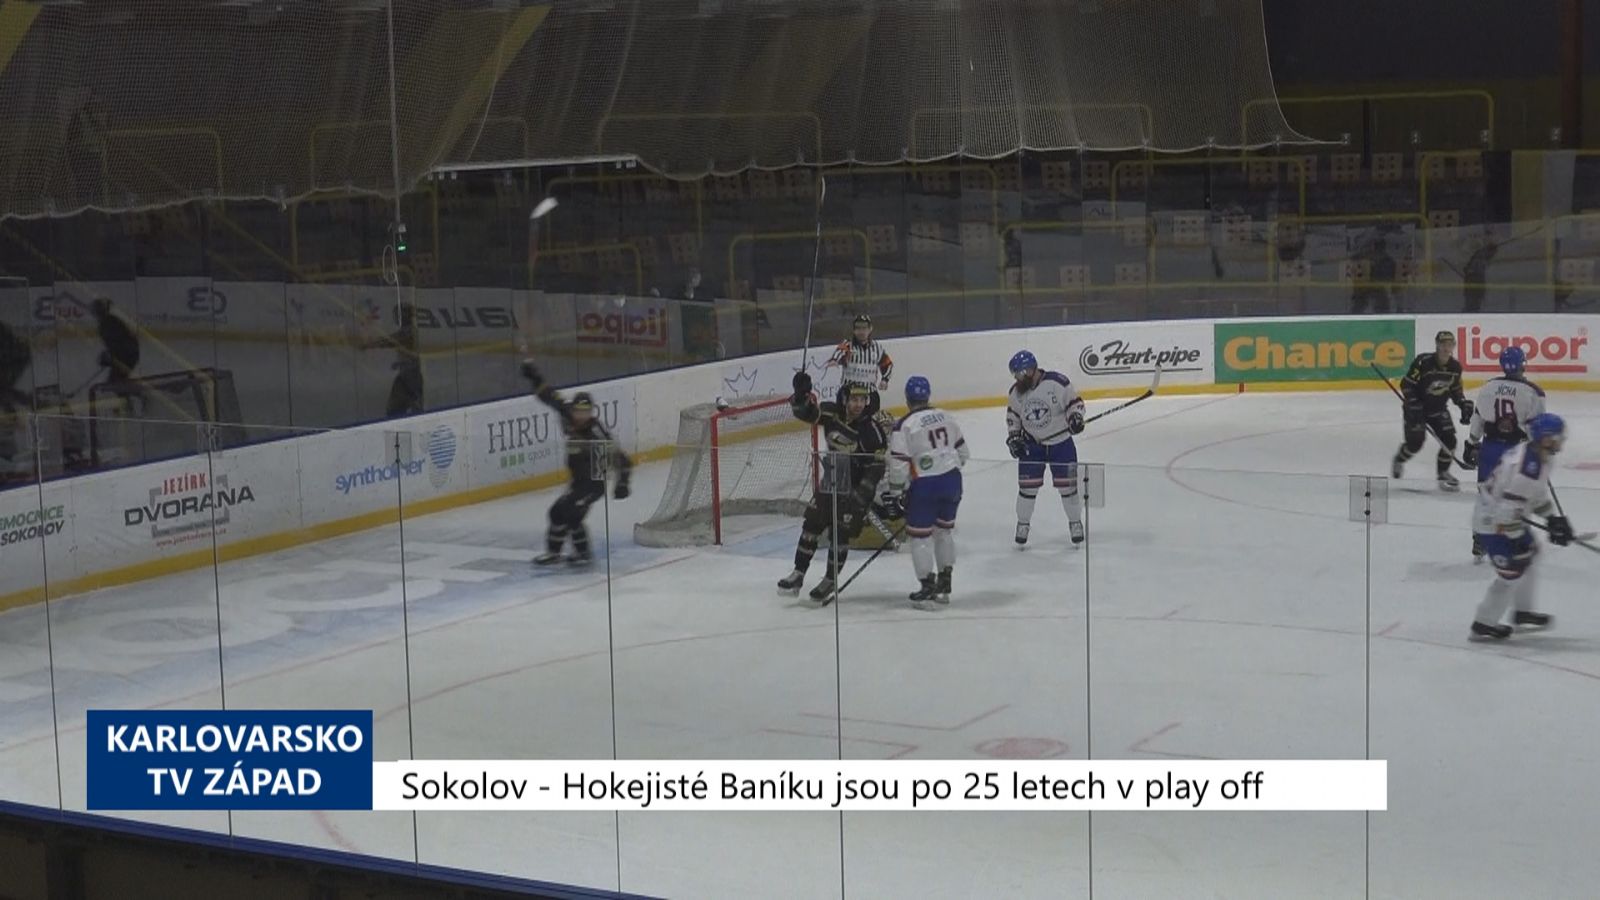 Sokolov: Hokejisté Baníku jsou po 25 letech v play off (TV Západ)